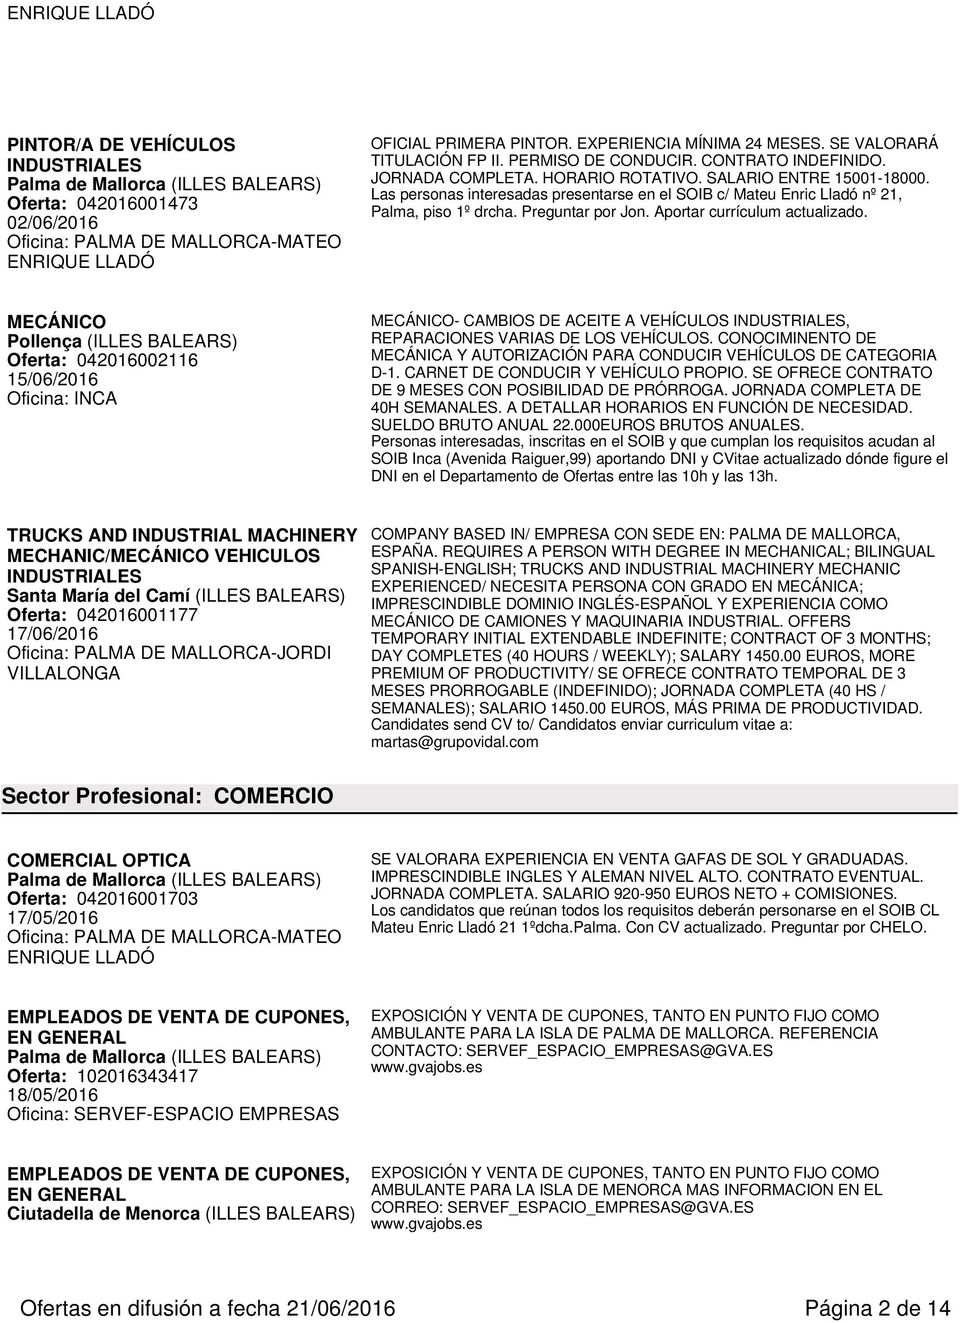 Aportar currículum actualizado. MECÁNICO Pollença (ILLES BALEARS) Oferta: 042016002116 15/06/2016 MECÁNICO- CAMBIOS DE ACEITE A VEHÍCULOS INDUSTRIALES, REPARACIONES VARIAS DE LOS VEHÍCULOS.